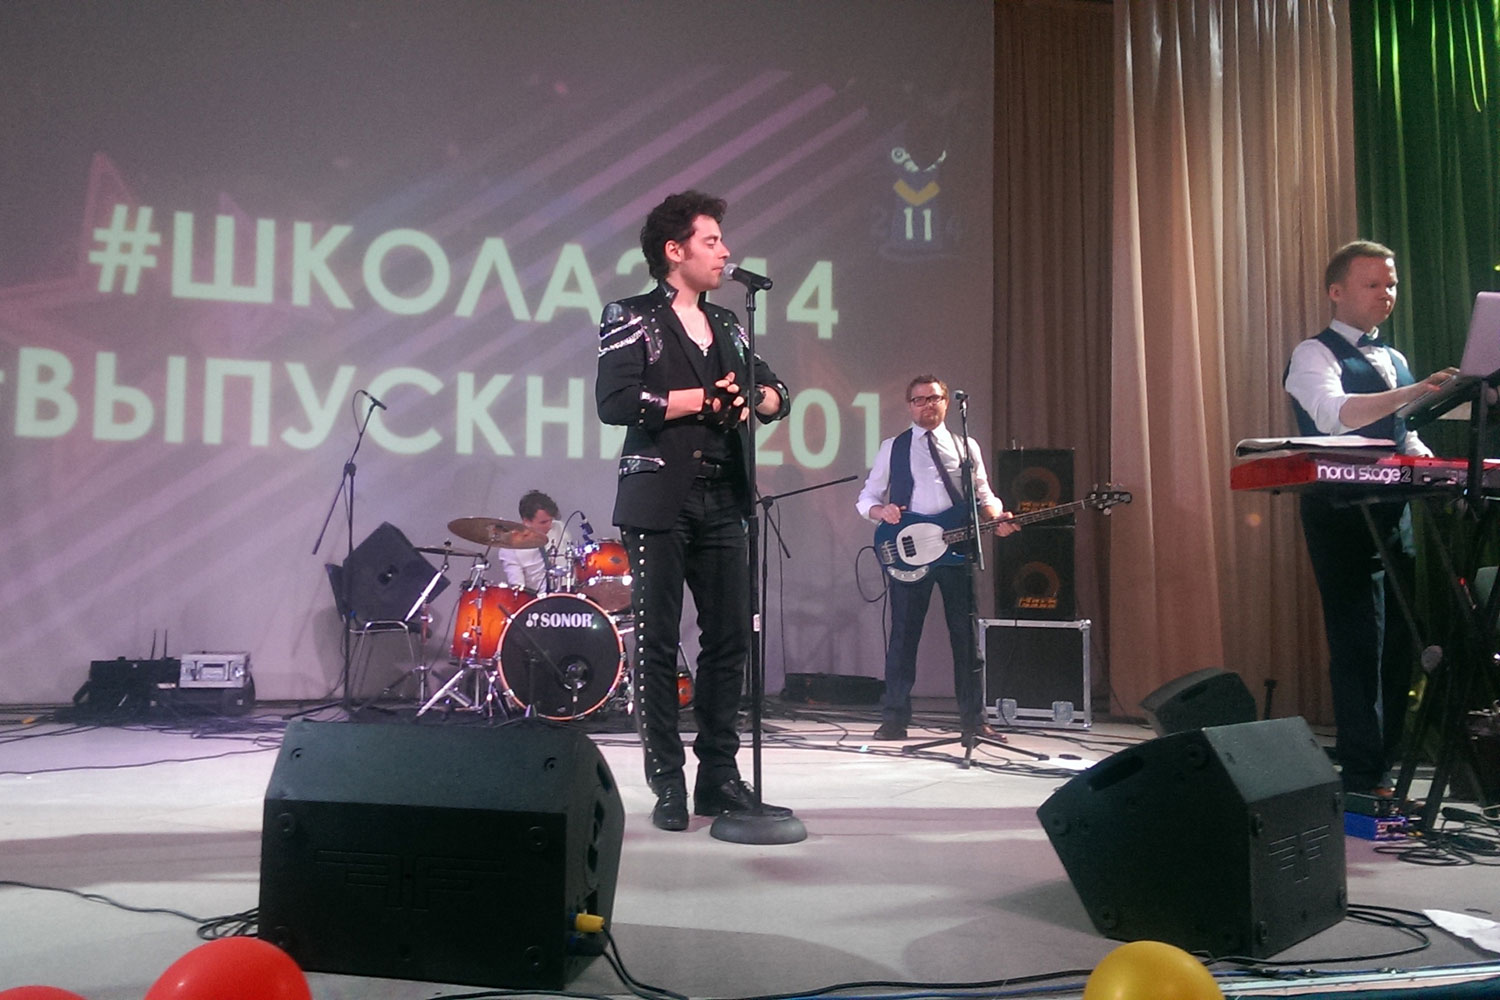 Кавер группа на выпускной в Москве, выступление на выпускном вечере школы № 2114  в Бутово